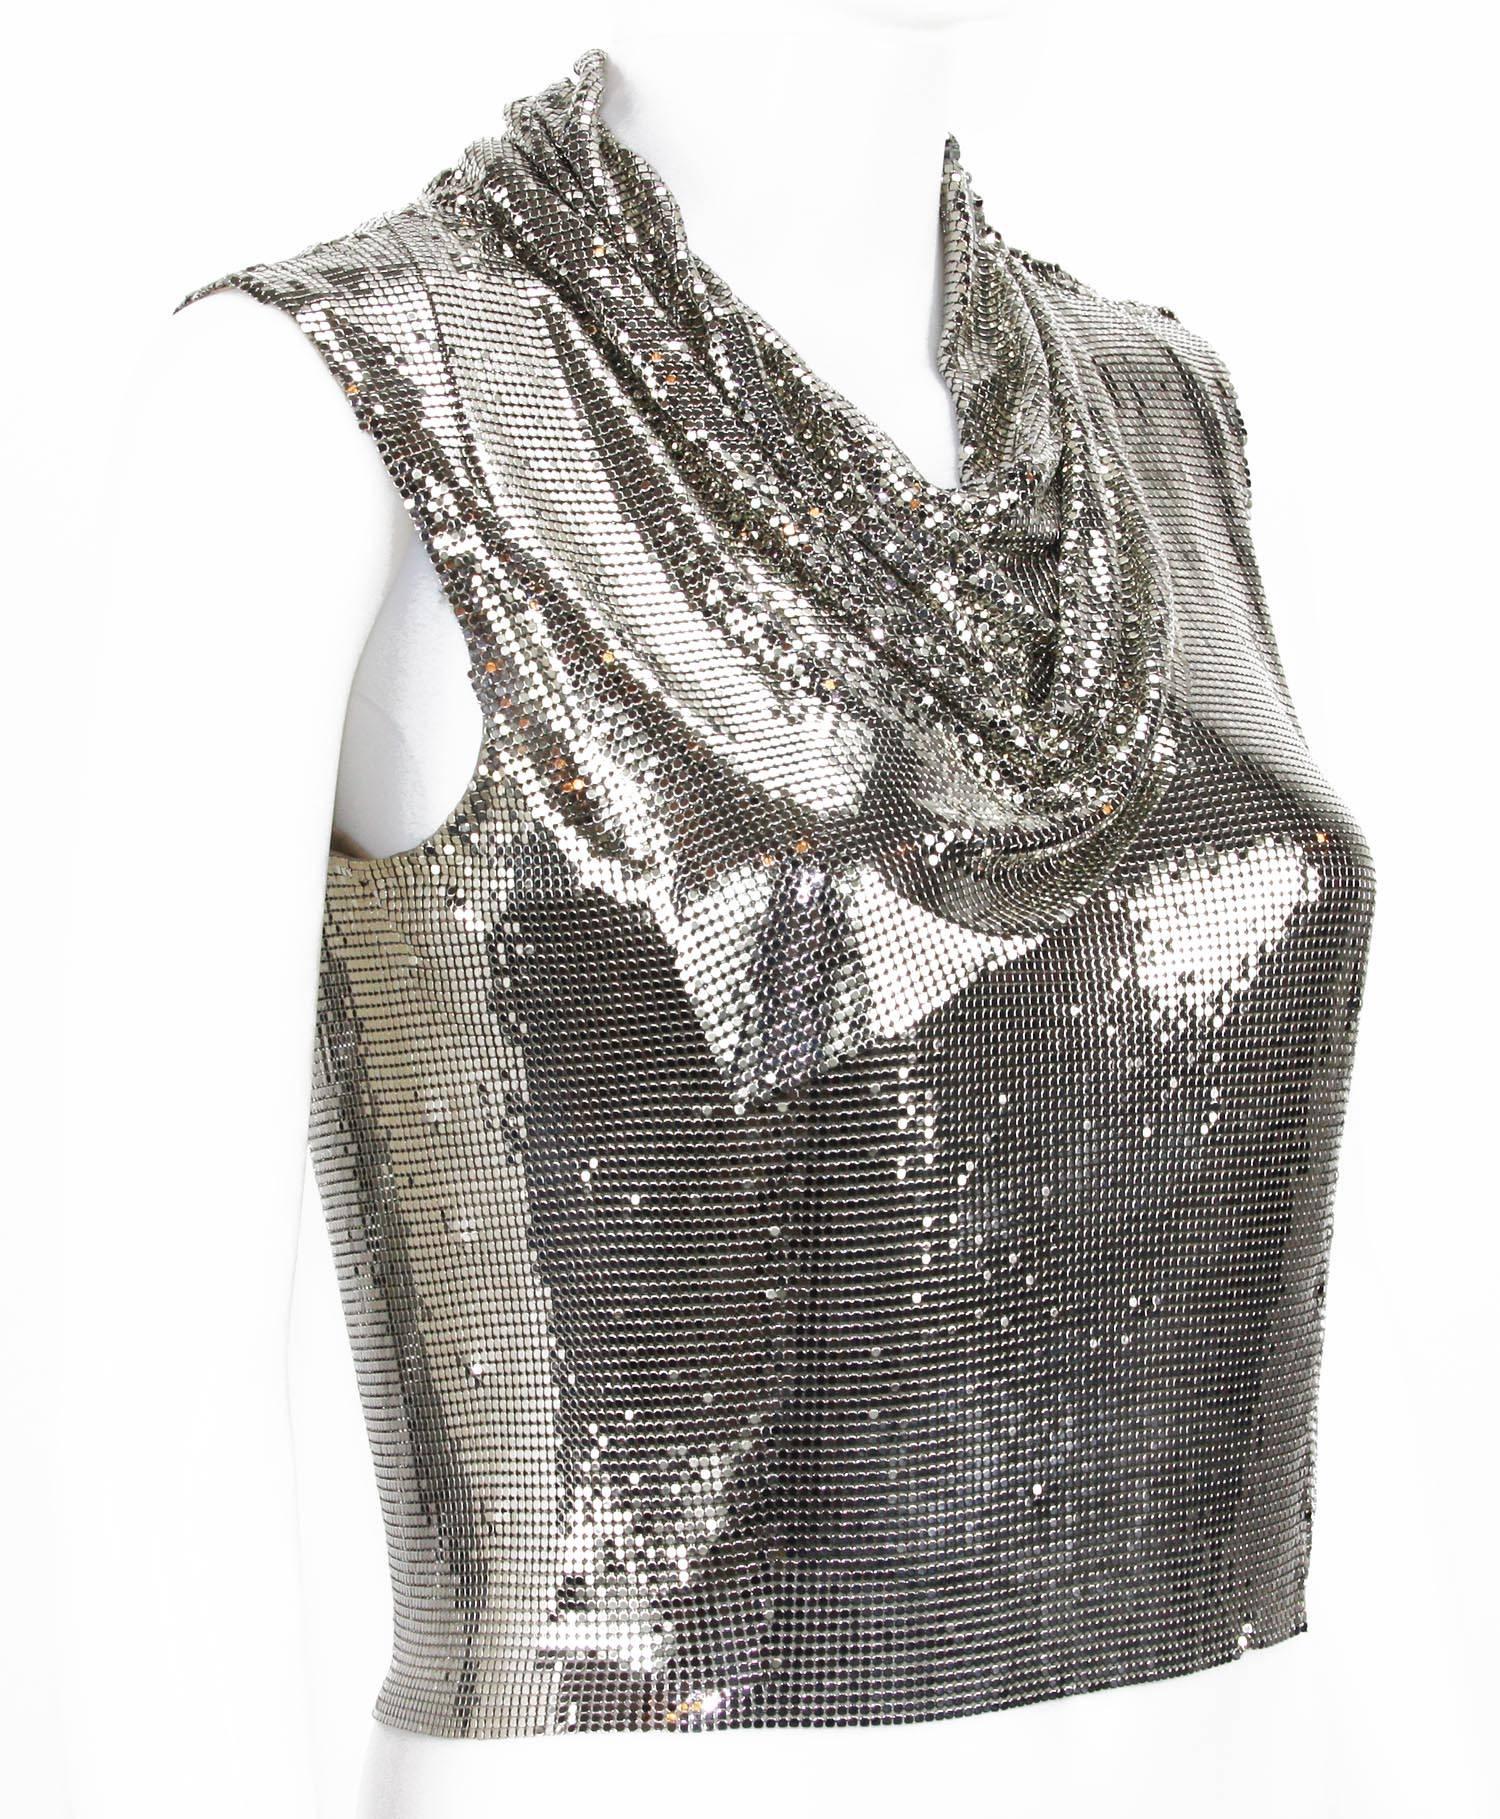 Gianni Versace Couture Icone des années 90 Maille métallique
Taille italienne 38
Maille métallique argentée
Ce haut est assorti d'une écharpe drapée en métal qui est attachée en permanence autour de la ligne de cou et qui a un aspect spécial et un